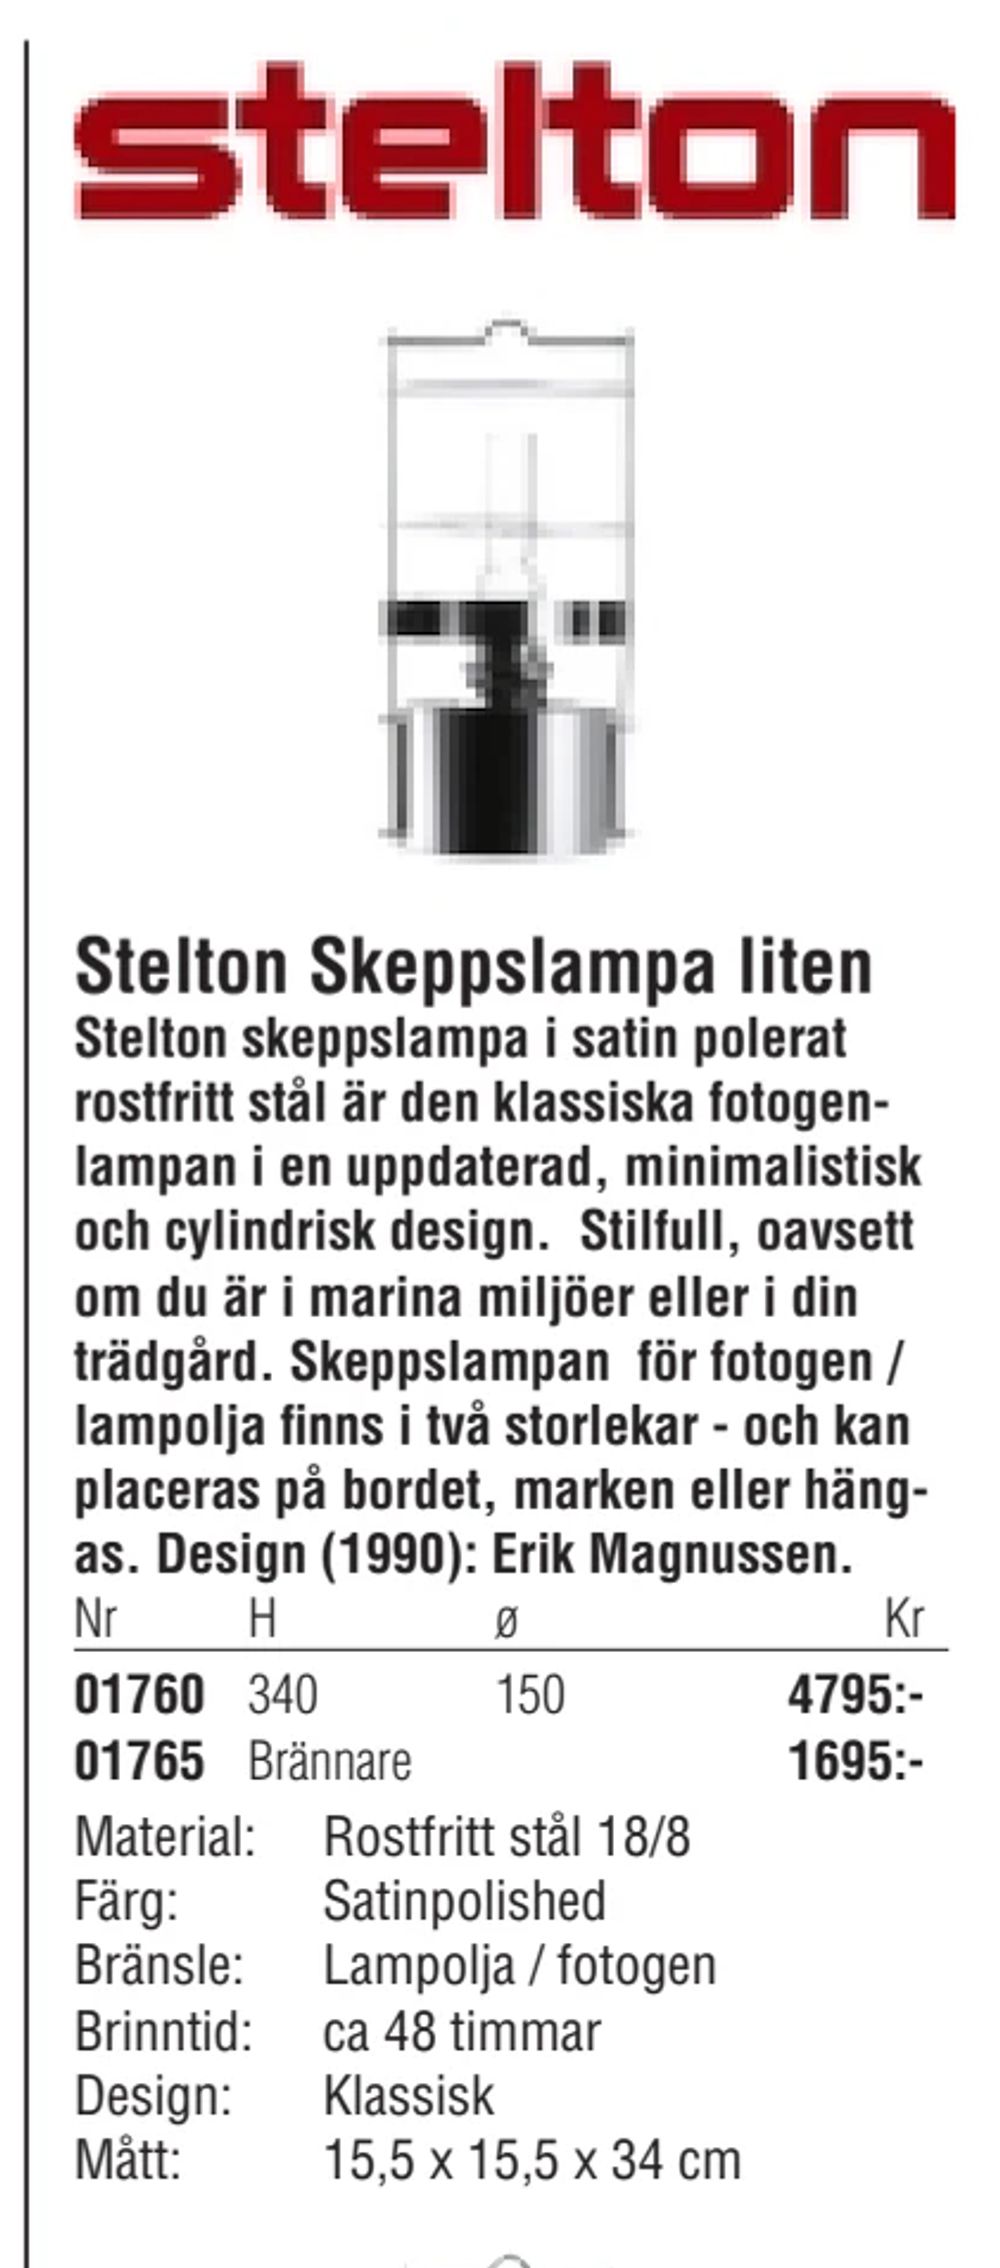 Erbjudanden på Stelton Skeppslampa liten från Erlandsons Brygga för 1 695 kr